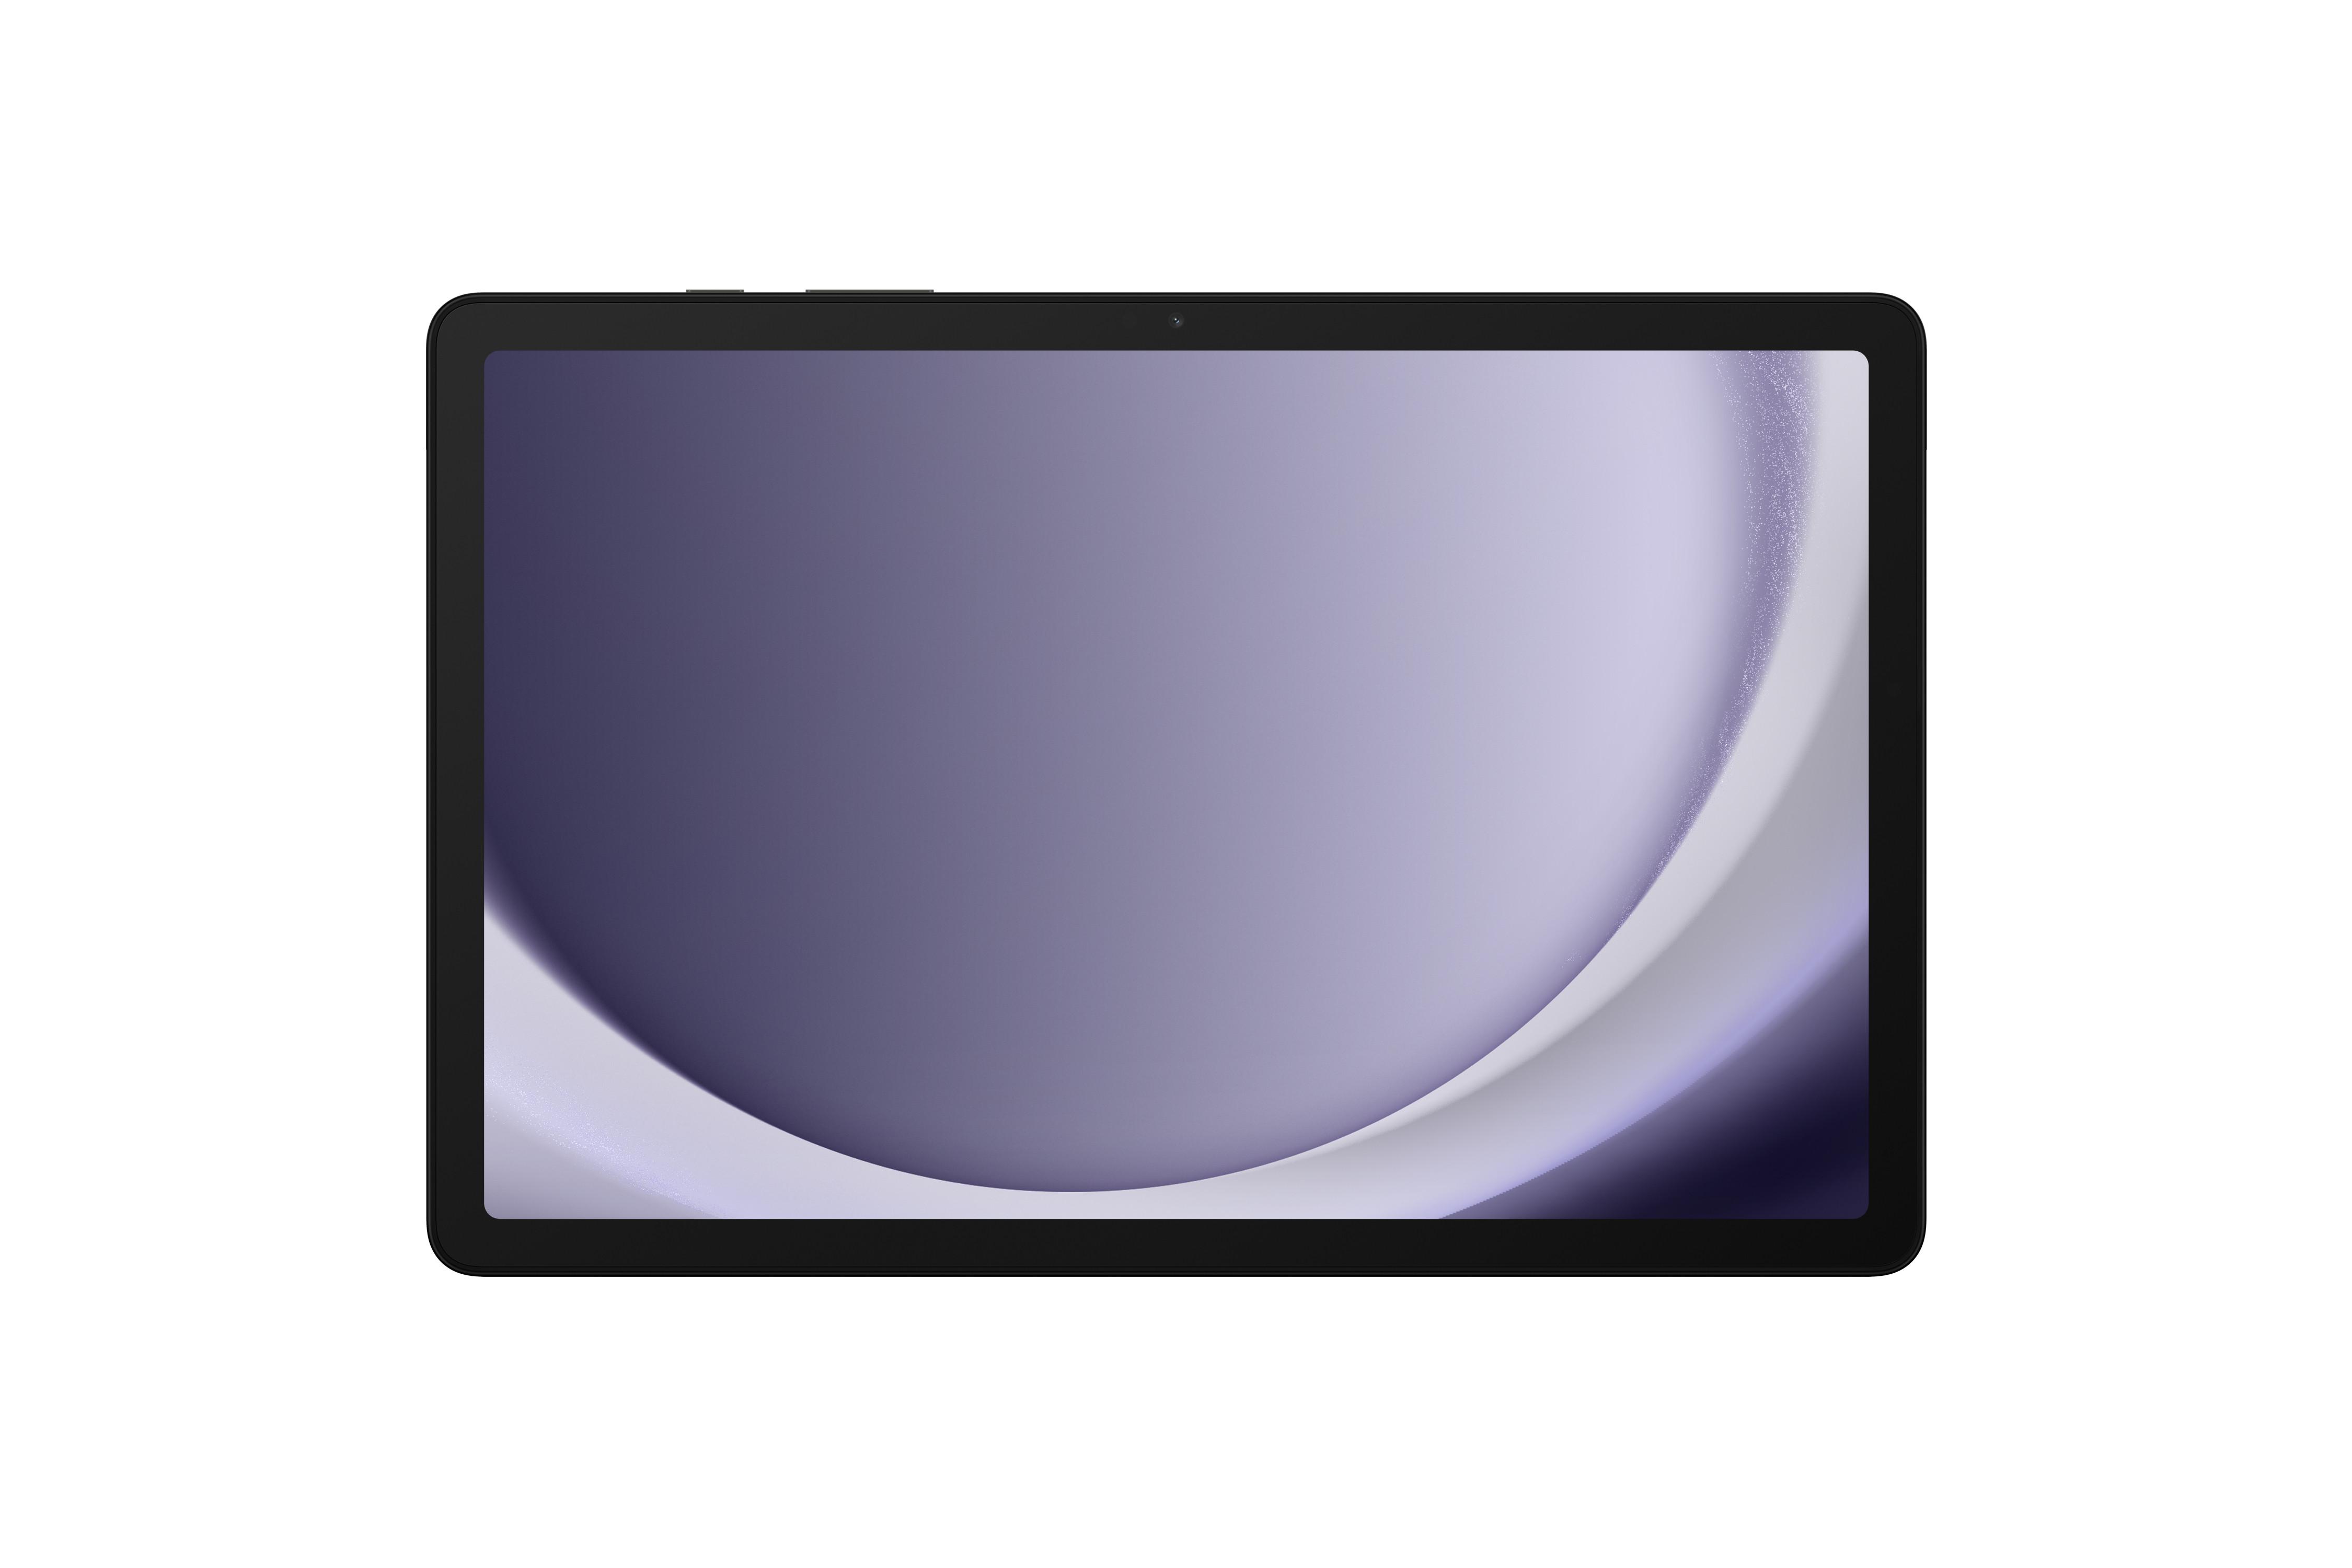 PORTE TABLETTE-porte tablette fitness-teleshopping